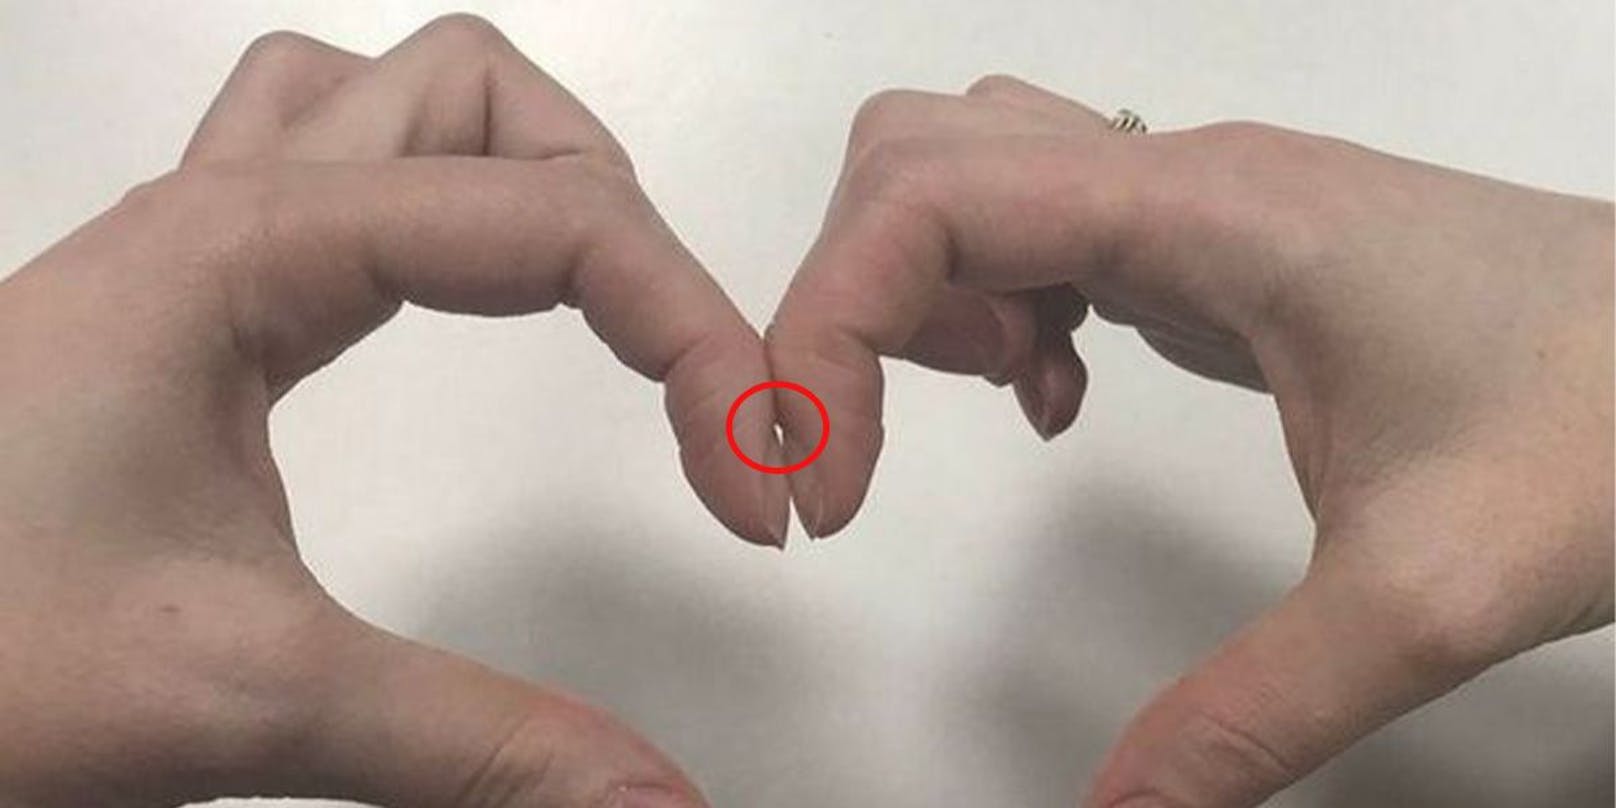 Bildet sich ein kleiner Spalt, wenn du die gleichen Finger jeder Hand so zusammenlegst, ist alles in Ordnung. Besteht der Spalt nicht, können Fingerschwellungen ein erster Hinweis sein, dass eine Erkrankung vorliegt.